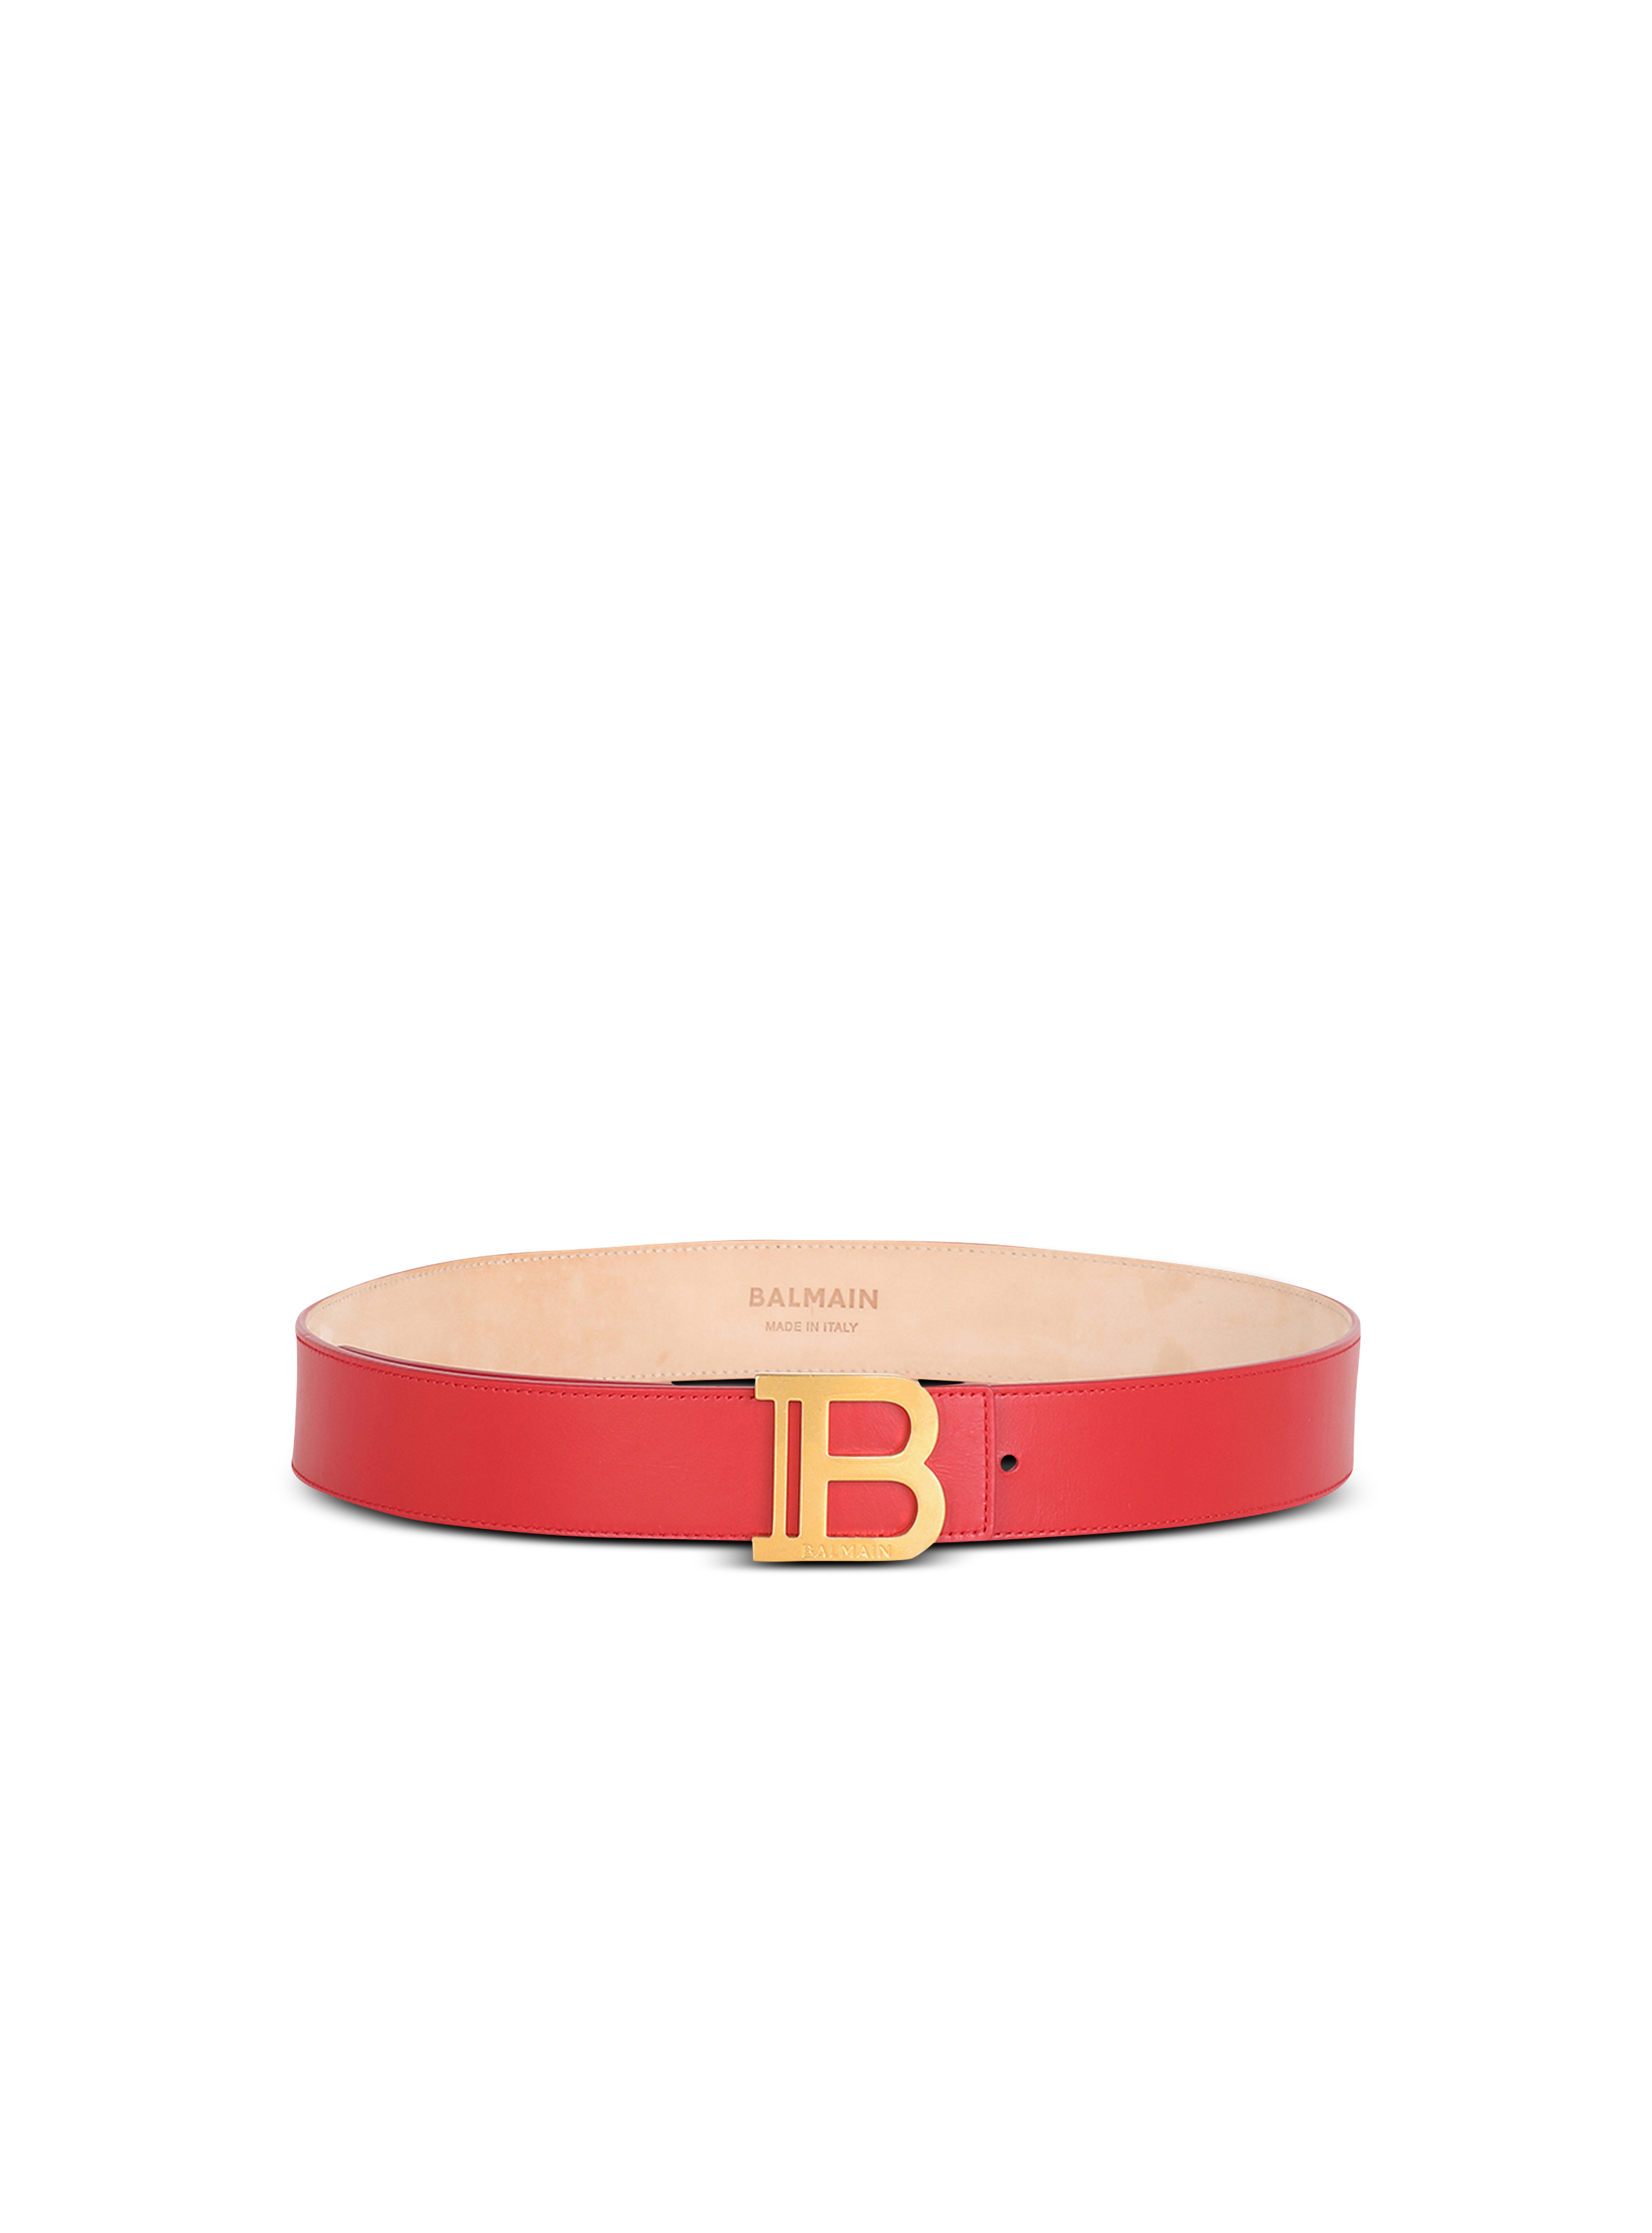 B-Belt小牛皮腰带, red